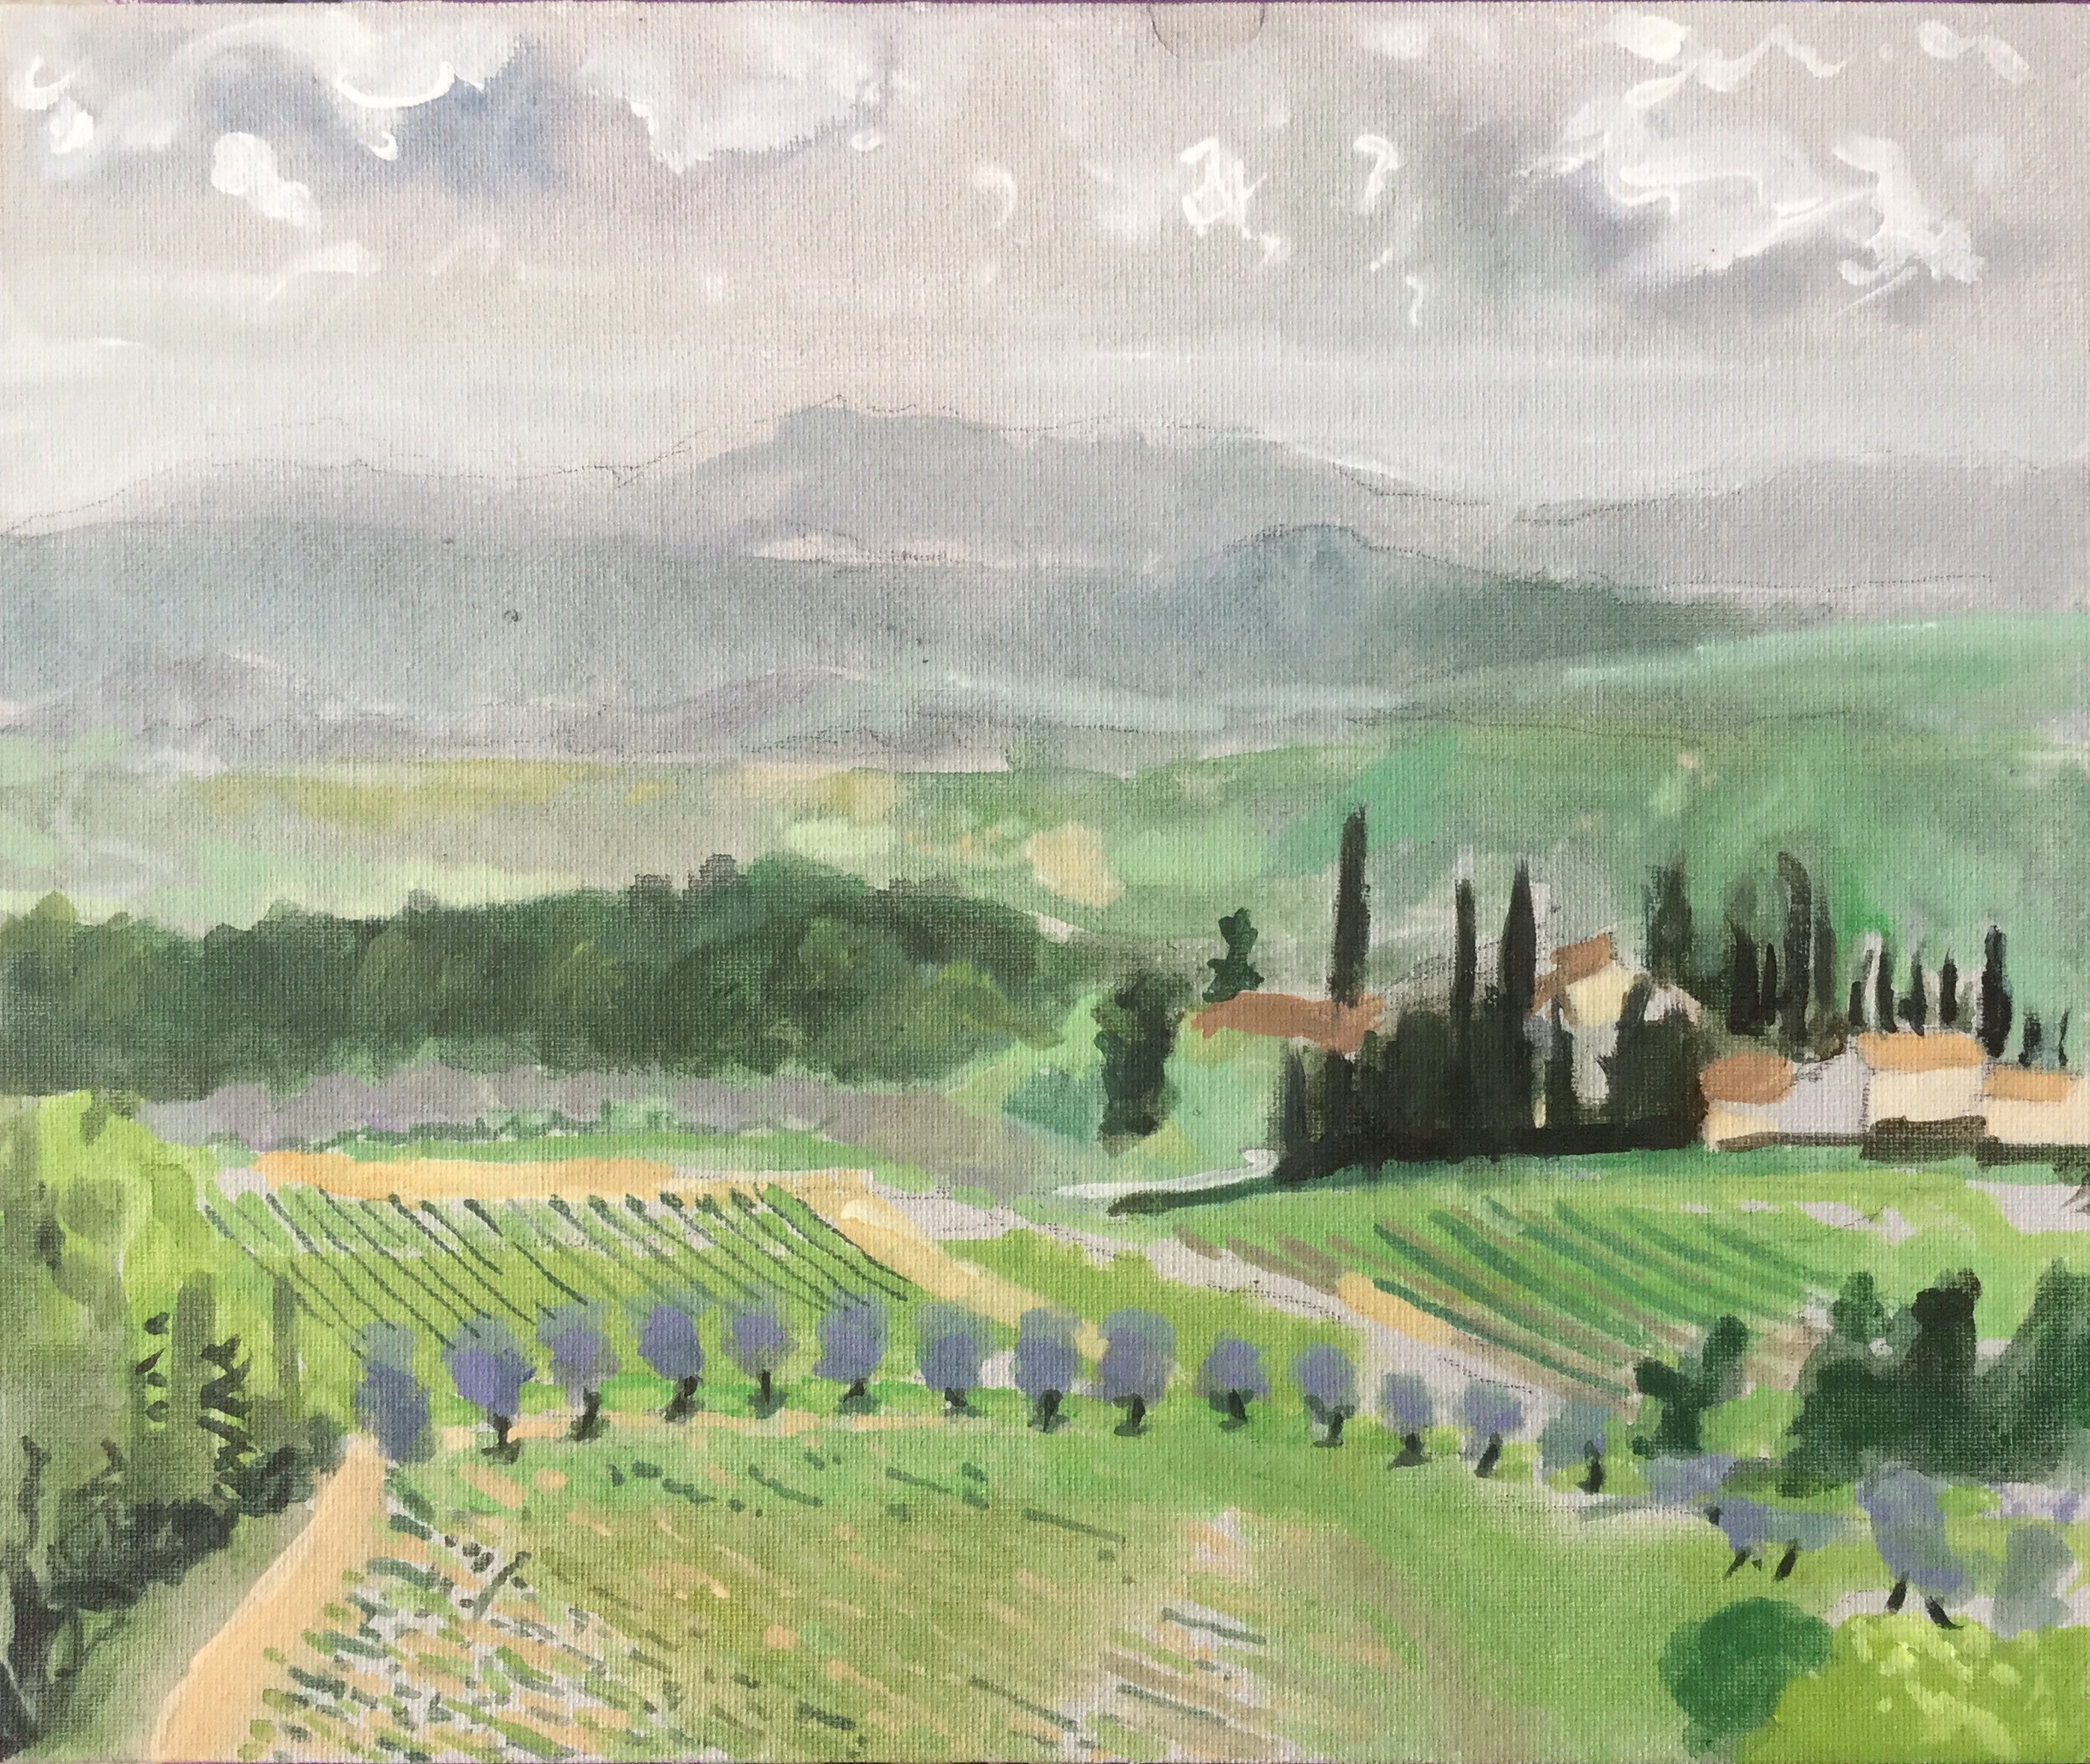 Tuscan Fields by Mark Fielding